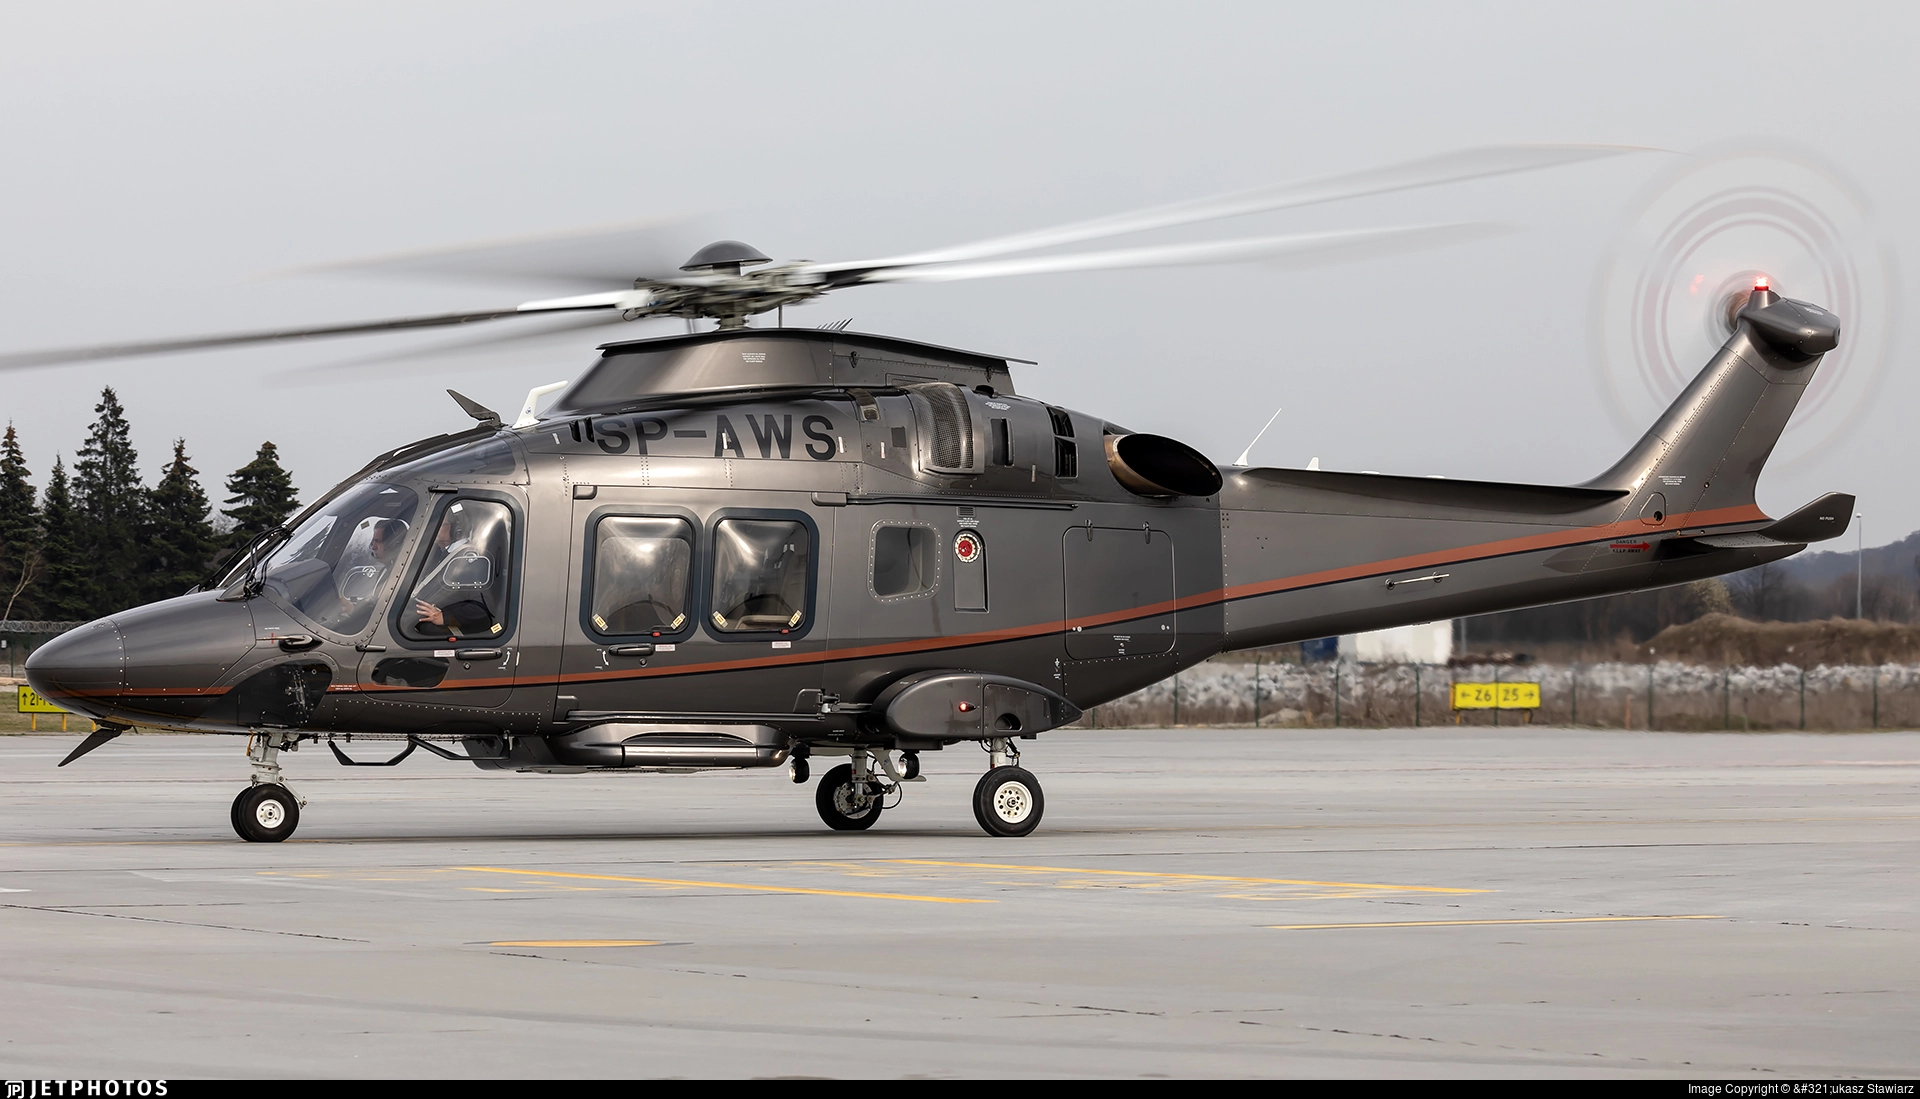 AgustaWestland AW169 full